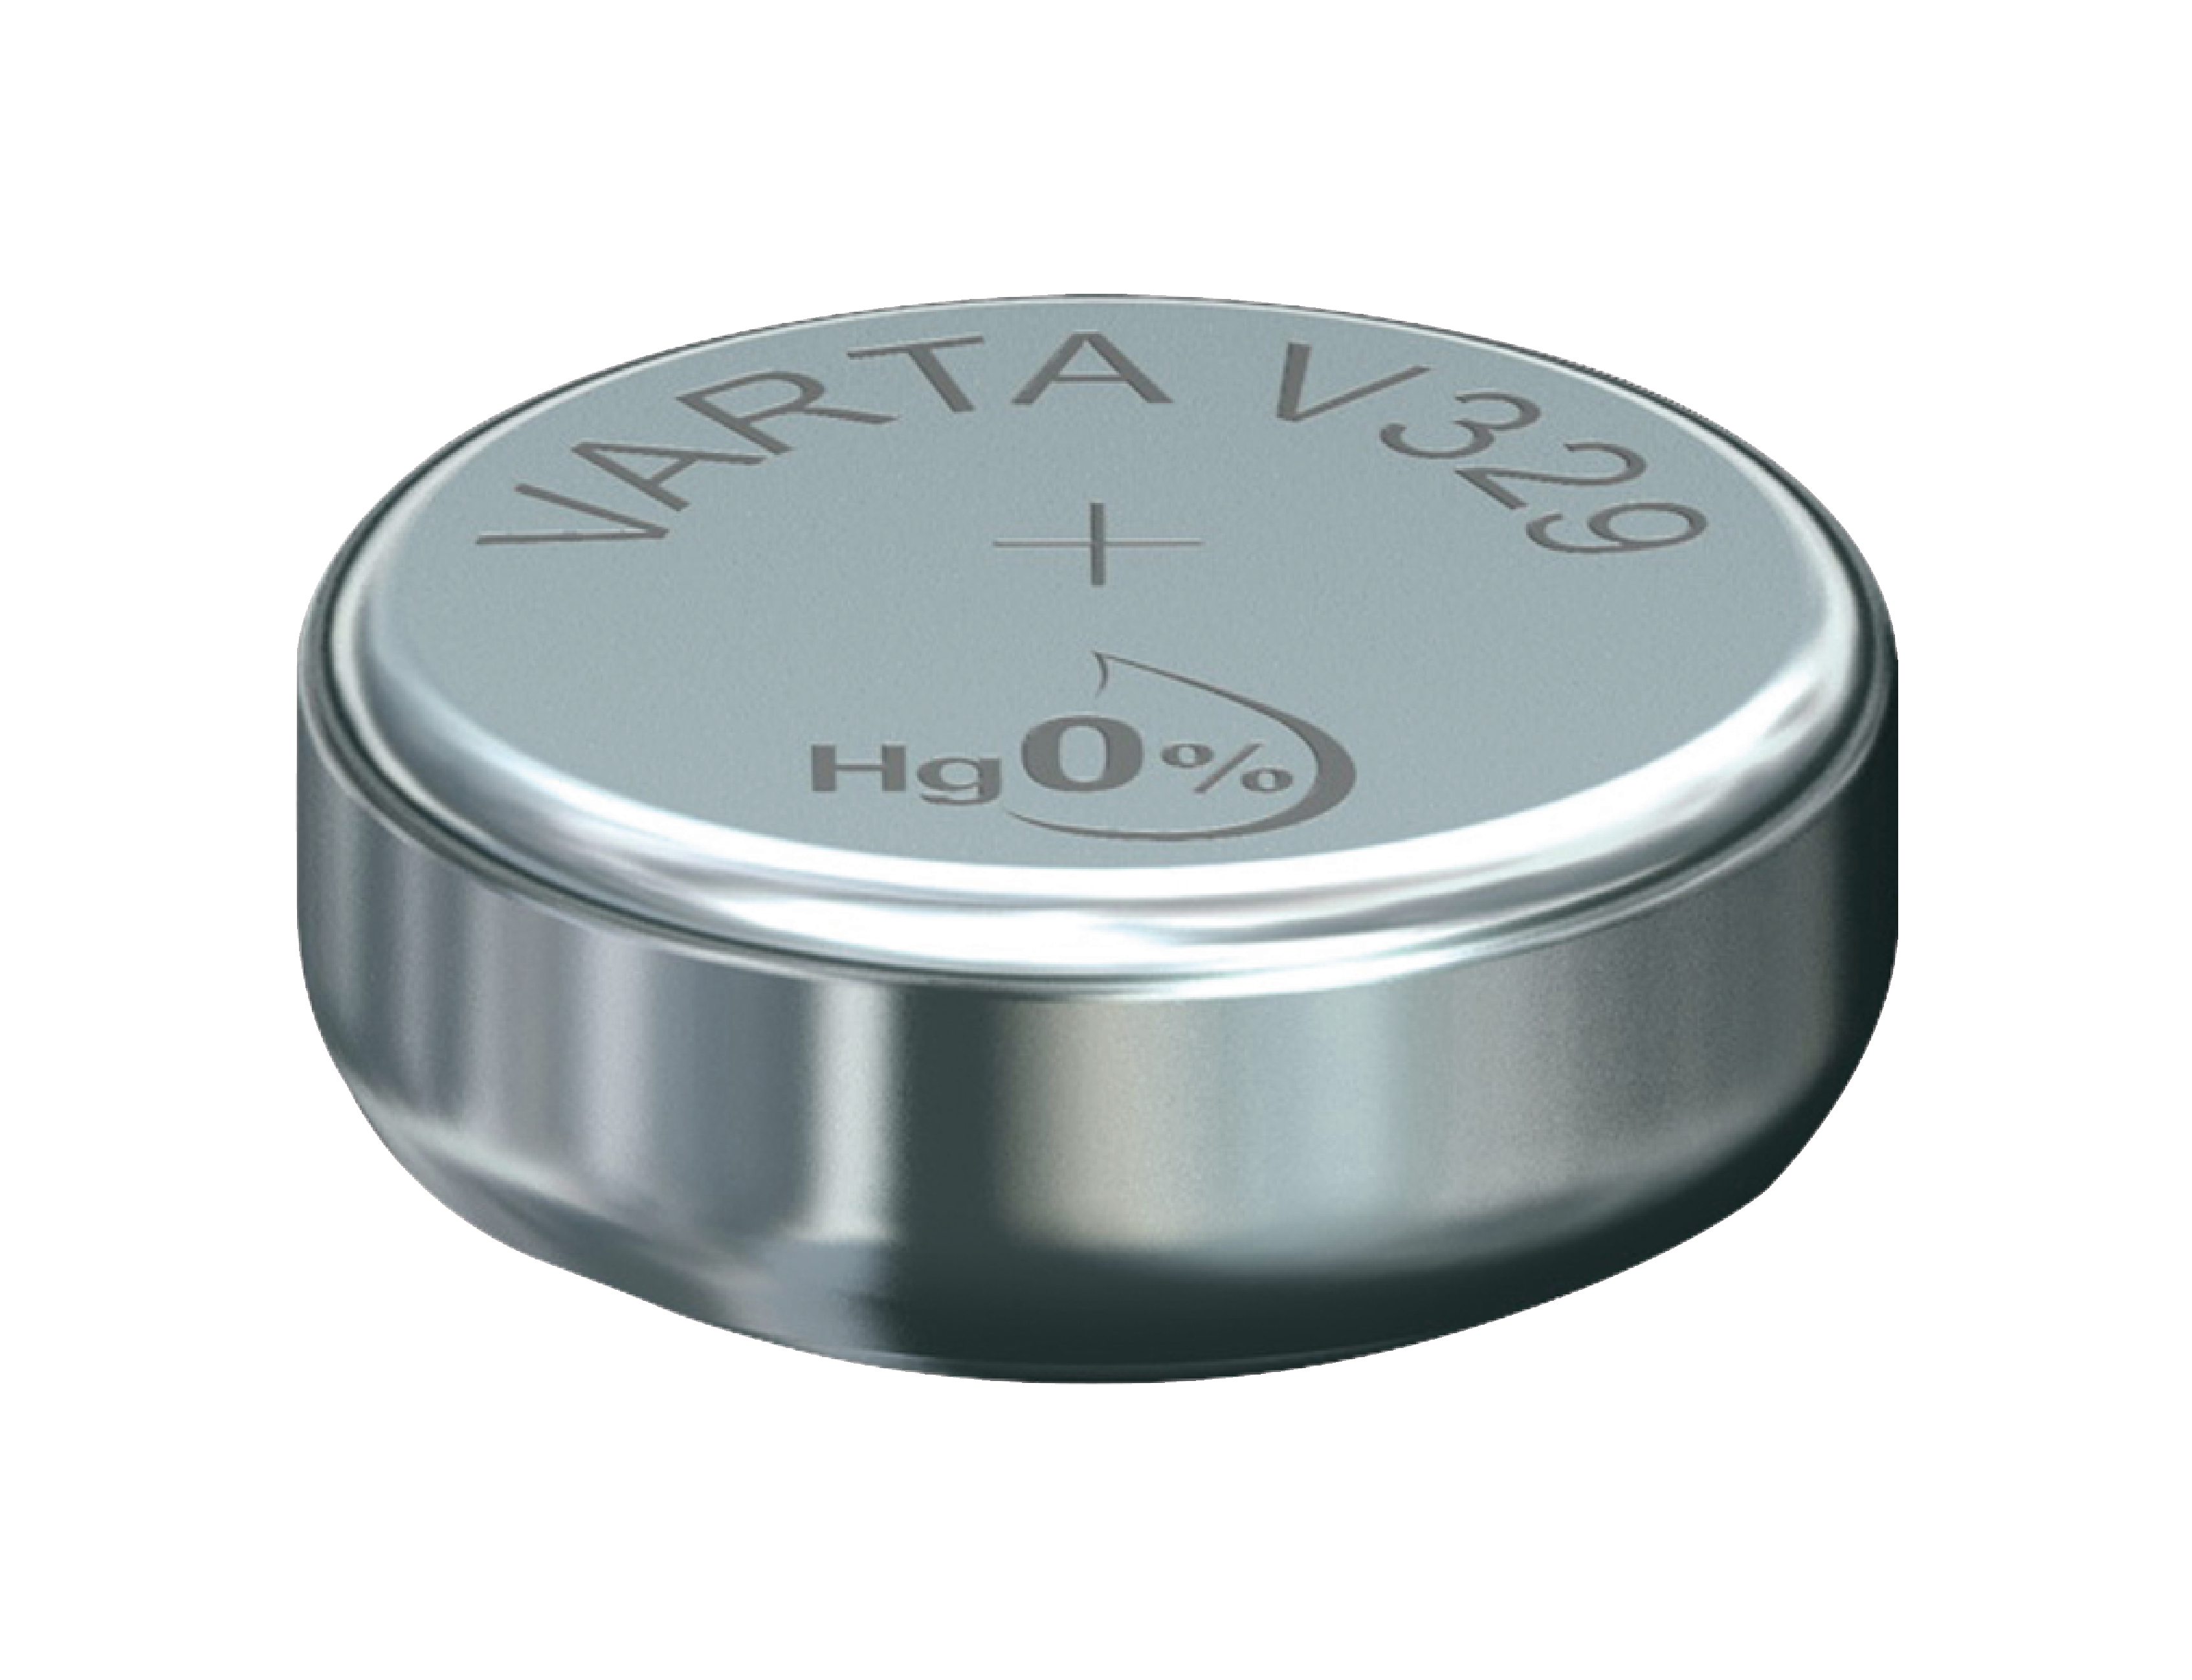 Stříbro-oxidová hodinková baterie SR731/V329 1.55 V 44 mAh, VARTA-V329